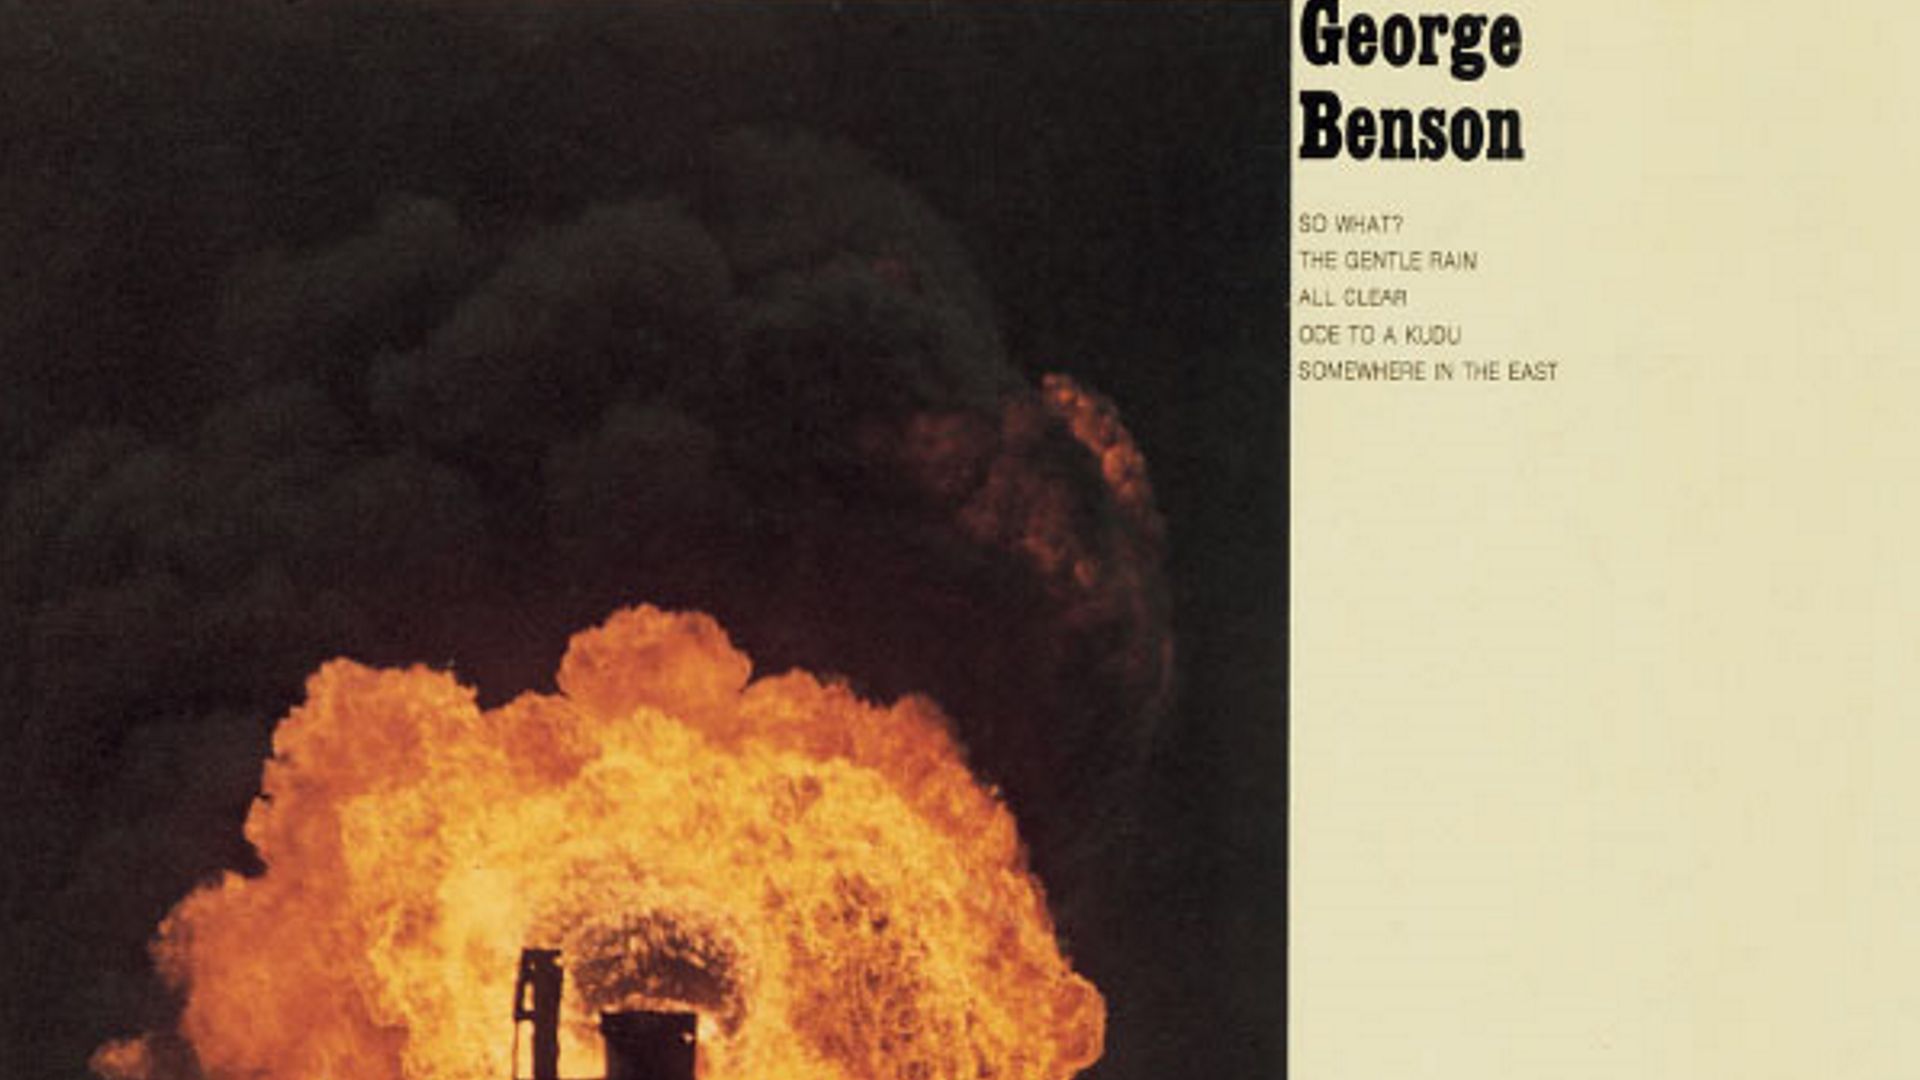 il-y-a-50-ans-senregistrait-lalbum-beyond-the-blue-horizon-de-george-benson